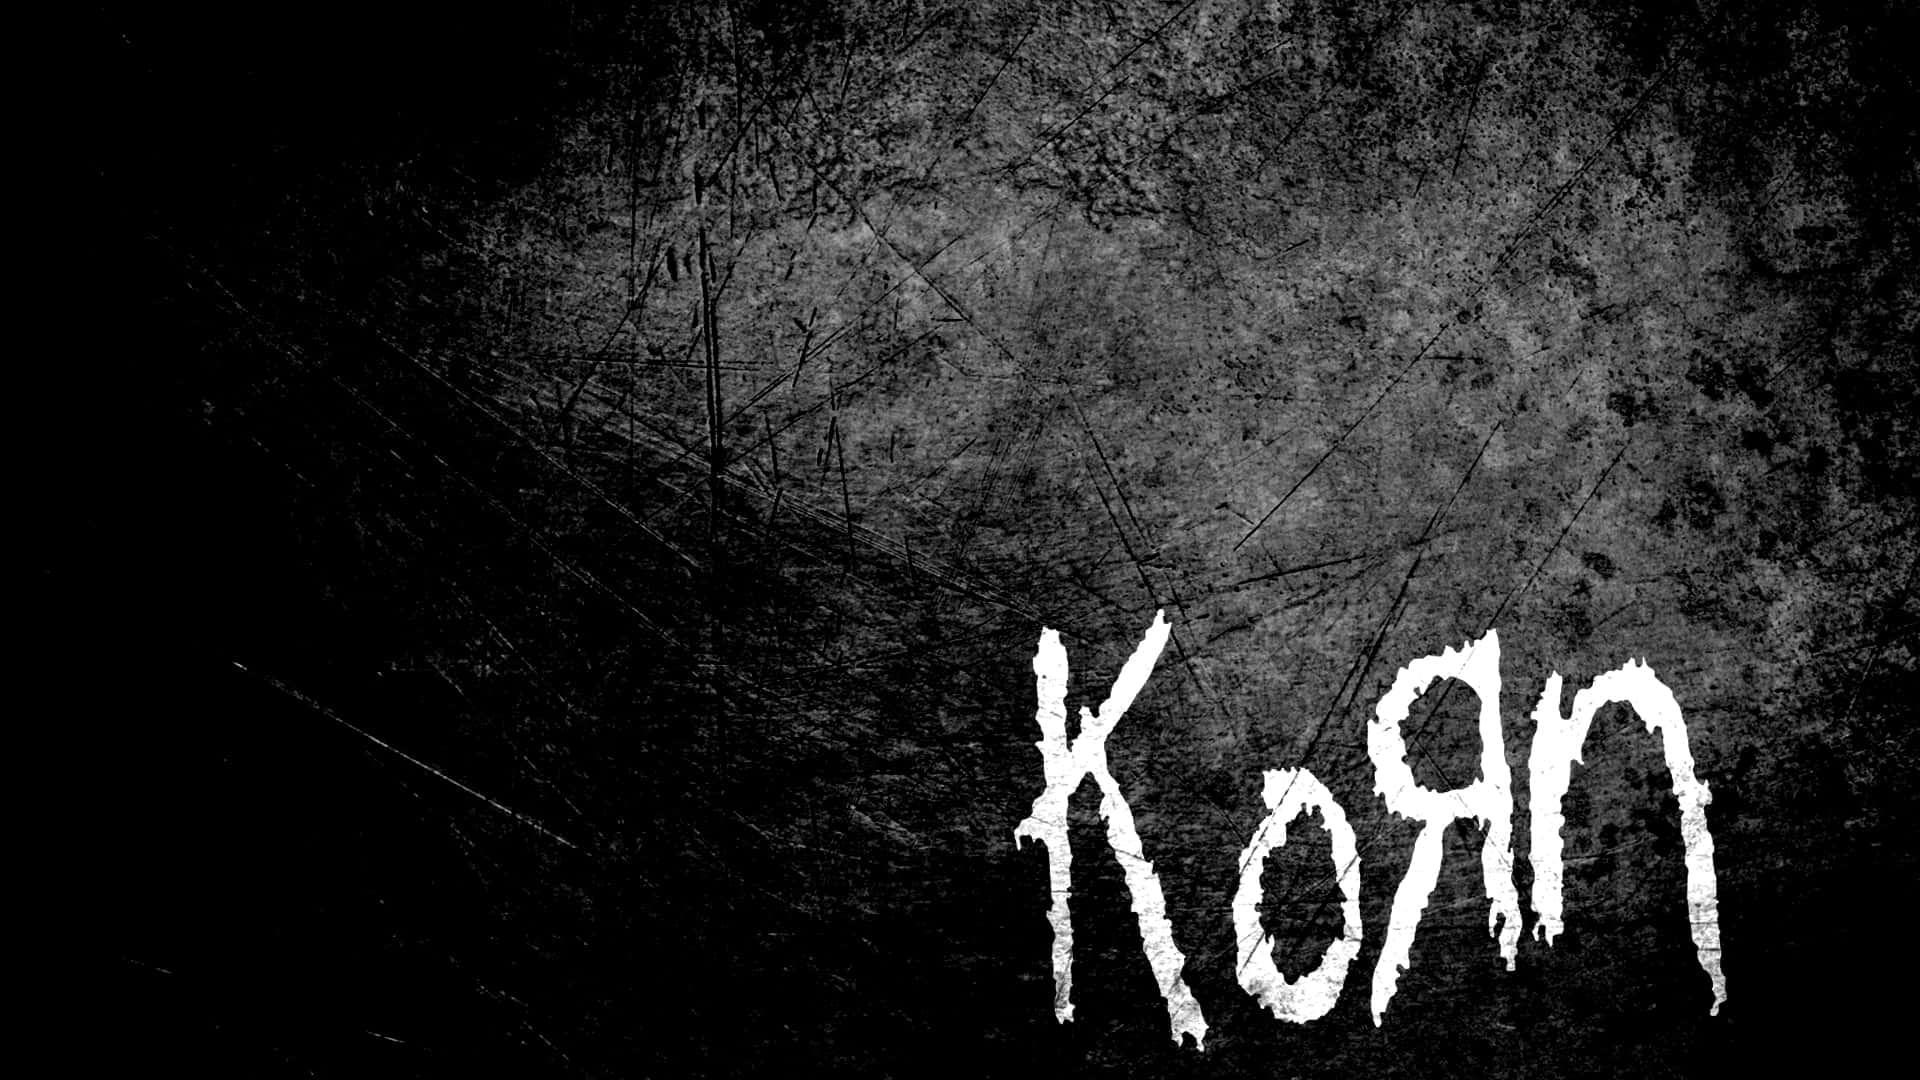 Korn 1920 X 1080 Wallpaper